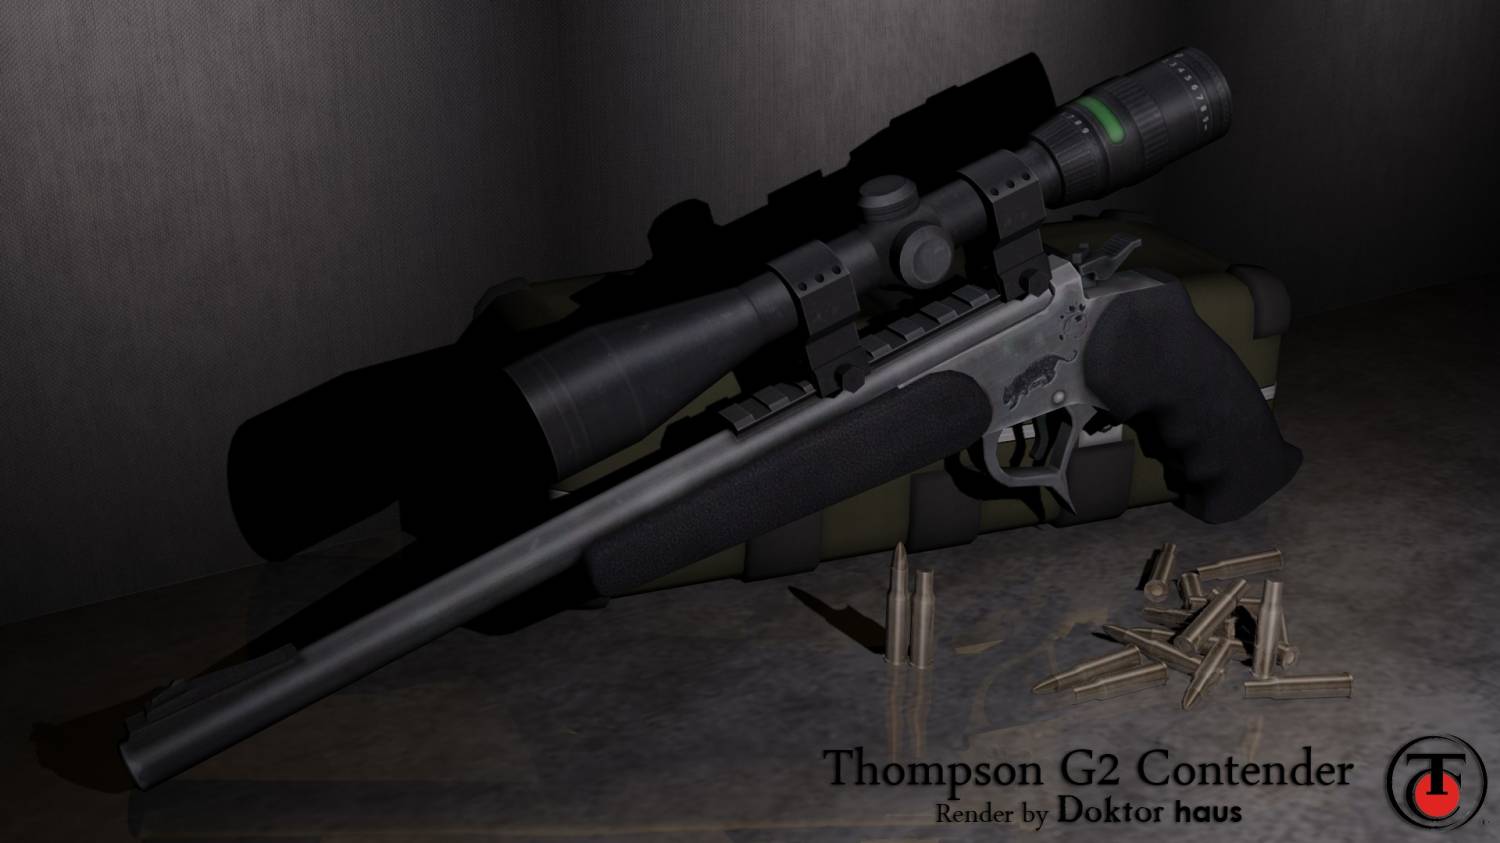 Thompson G2 Contender